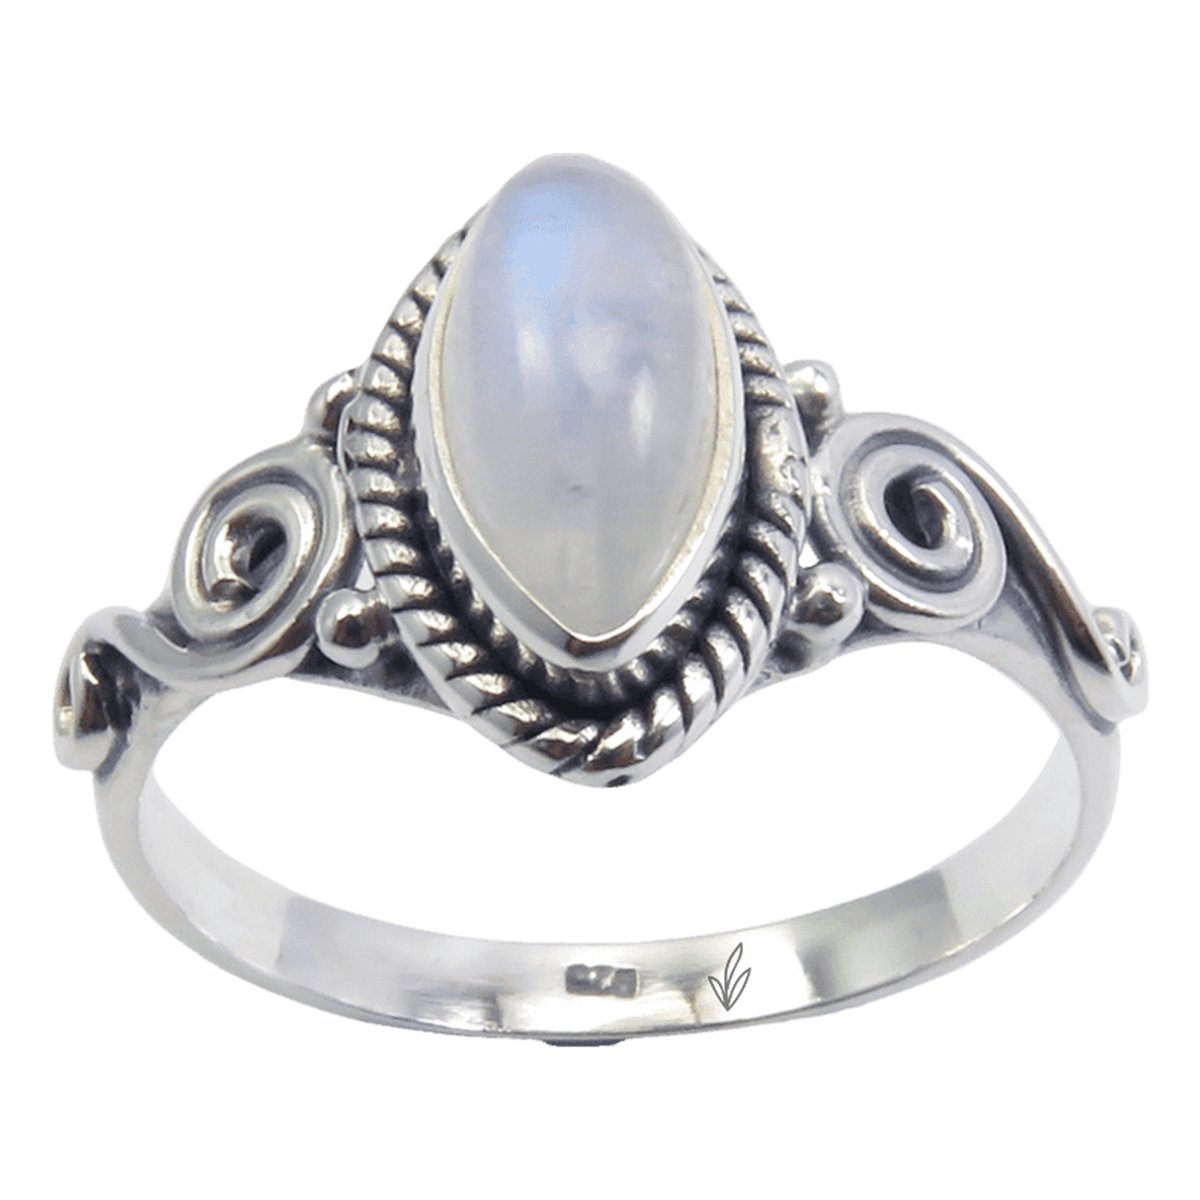 Natuursieraad - 925 sterling zilver maansteen ring maat 16.50 MM - luxe edelsteen sieraad - handgemaakt